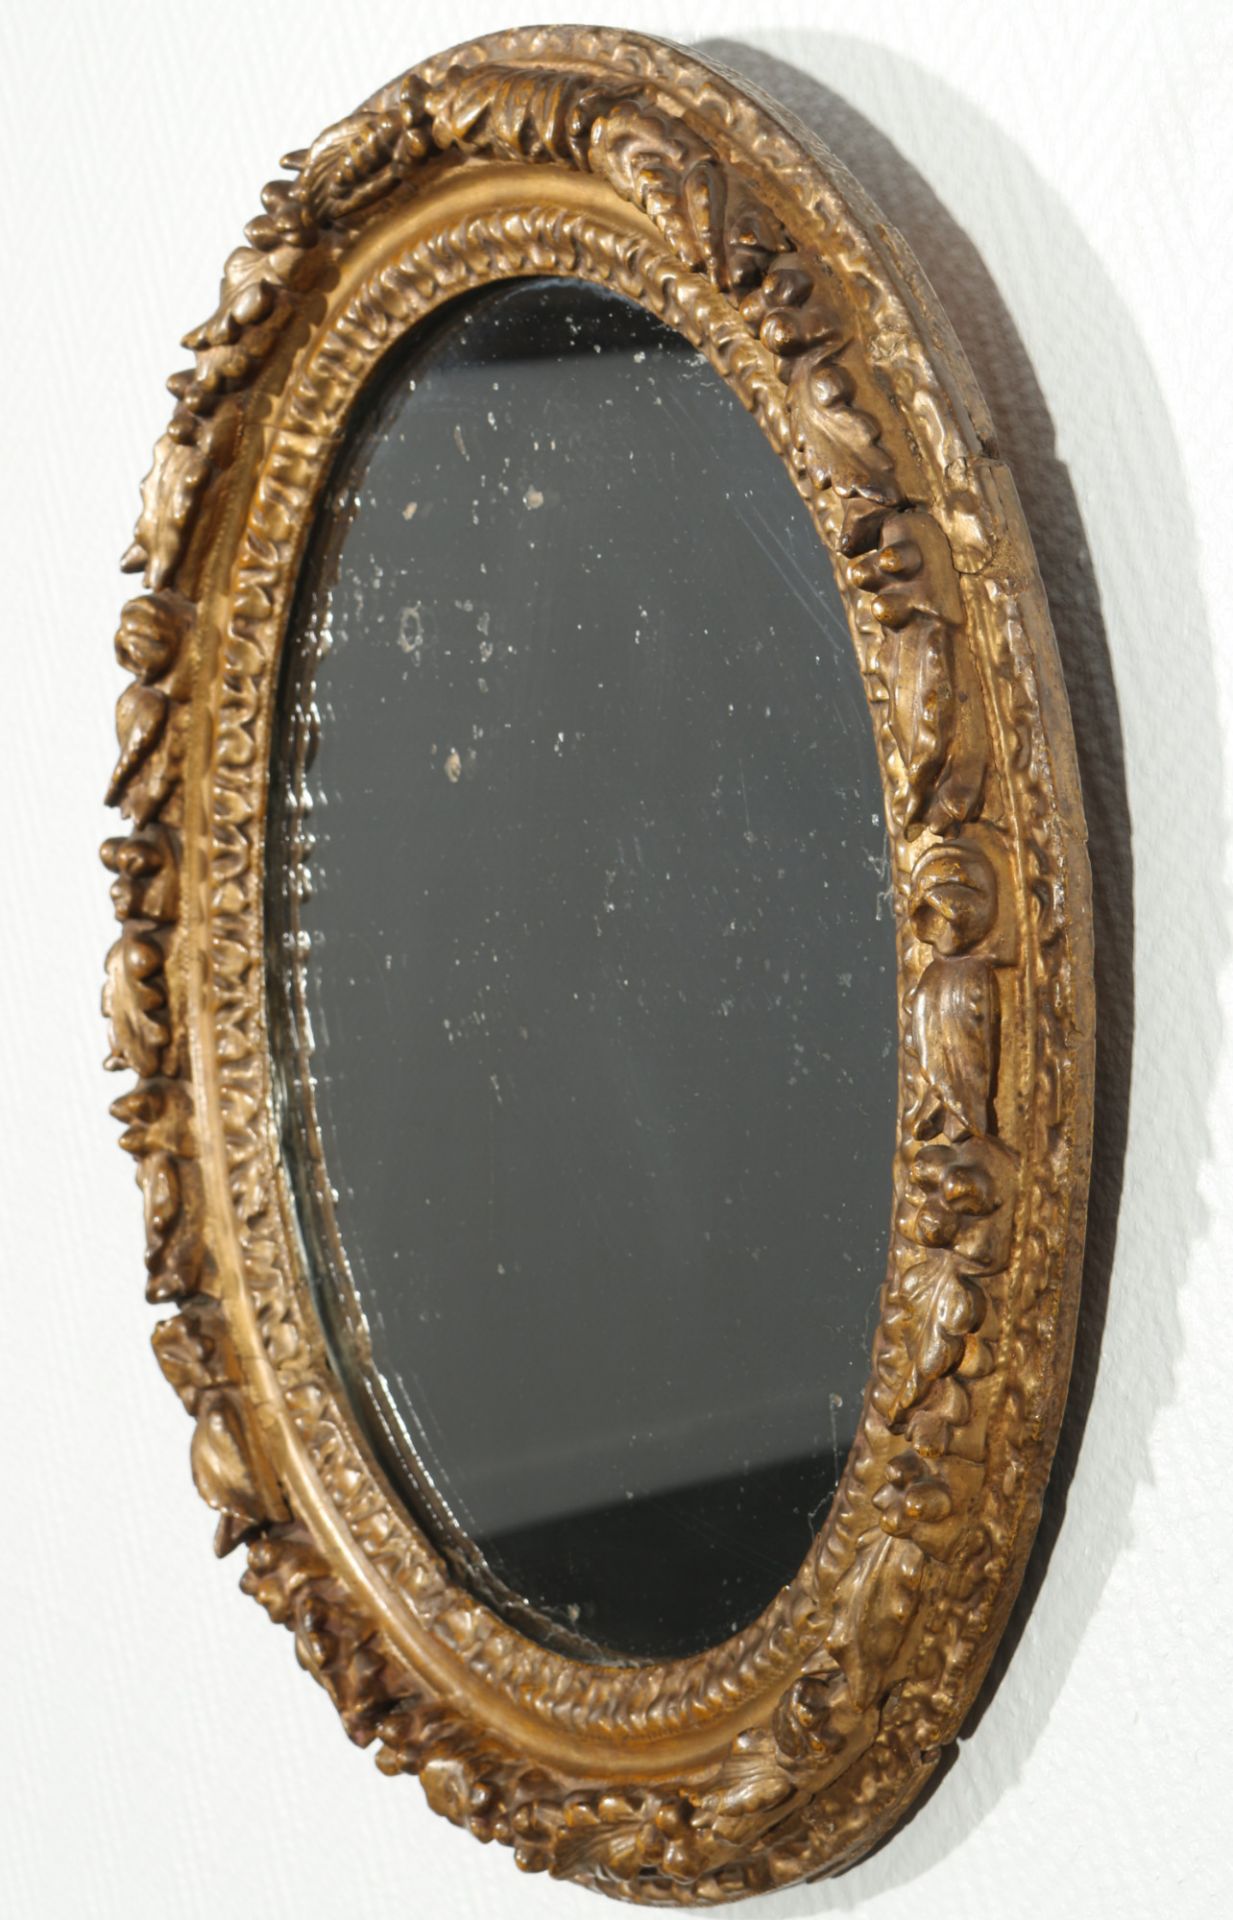 Baroque mirror 18th century, - Image 2 of 5